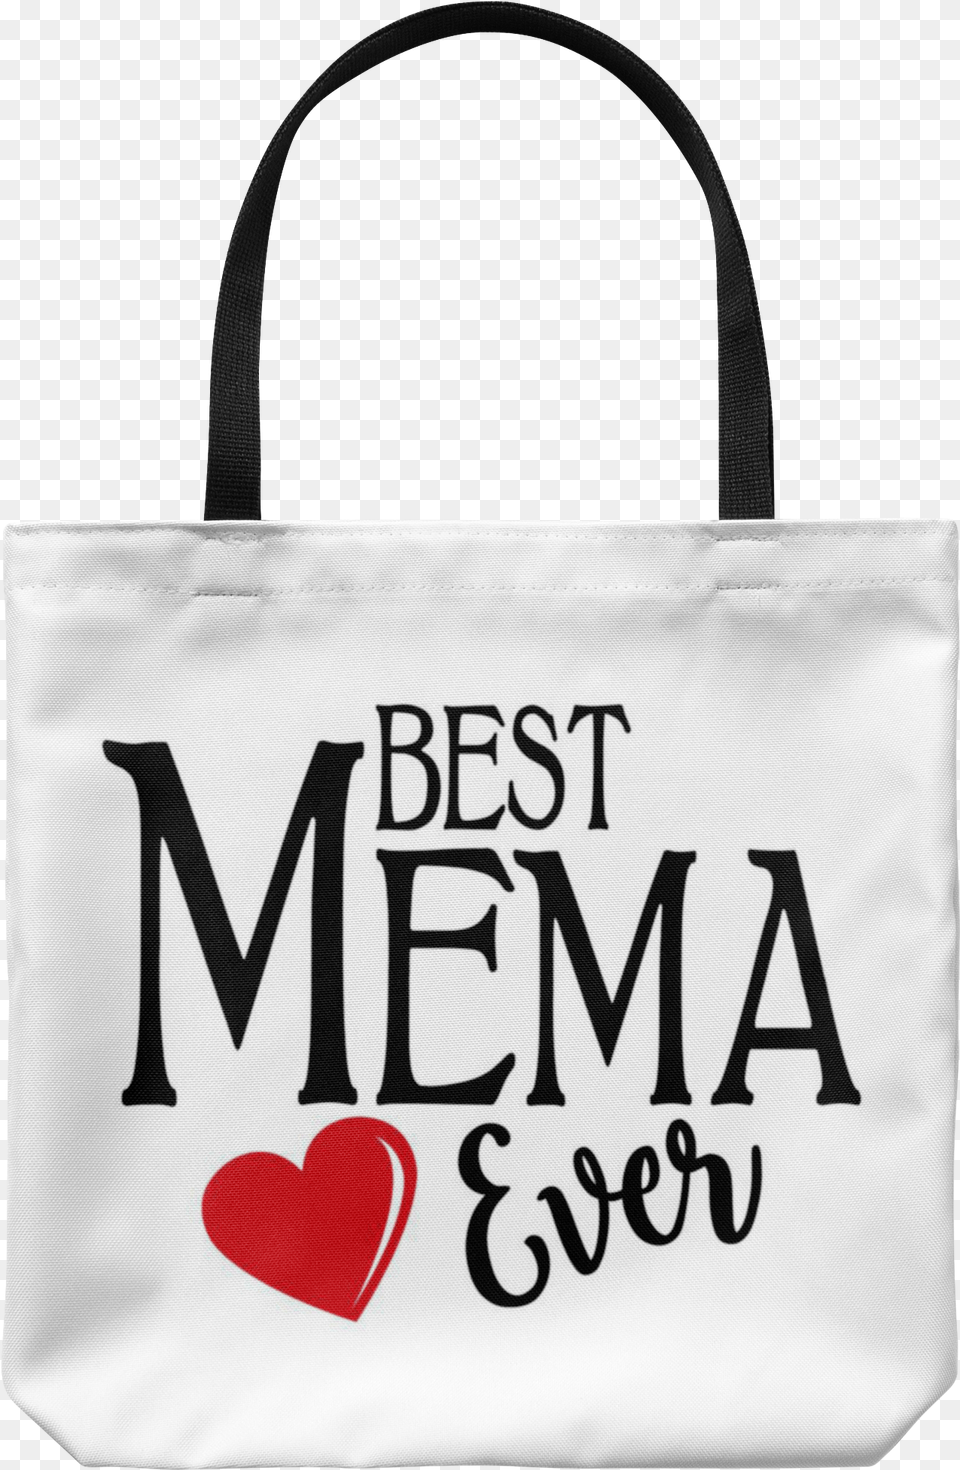 Best Mema Ever Tote Bag Tote Bag Carry Bag Tote Bags Tote Bag, Accessories, Handbag, Tote Bag, Purse Png